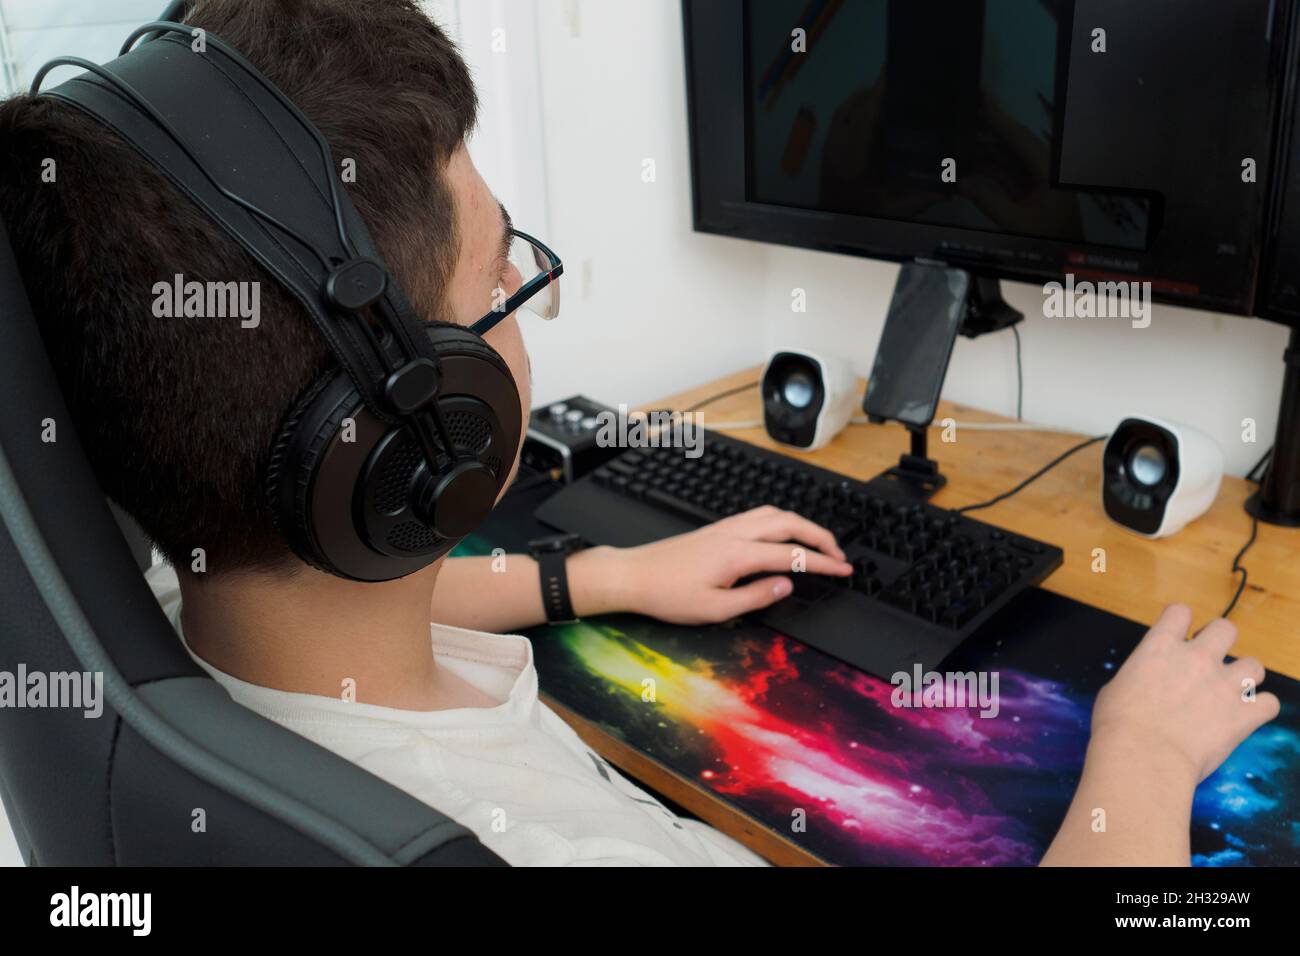 Un jeune joueur avec des écouteurs garçon jouant à un jeu d'ordinateur sur un ordinateur de bureau puissant modèle Release disponible Banque D'Images